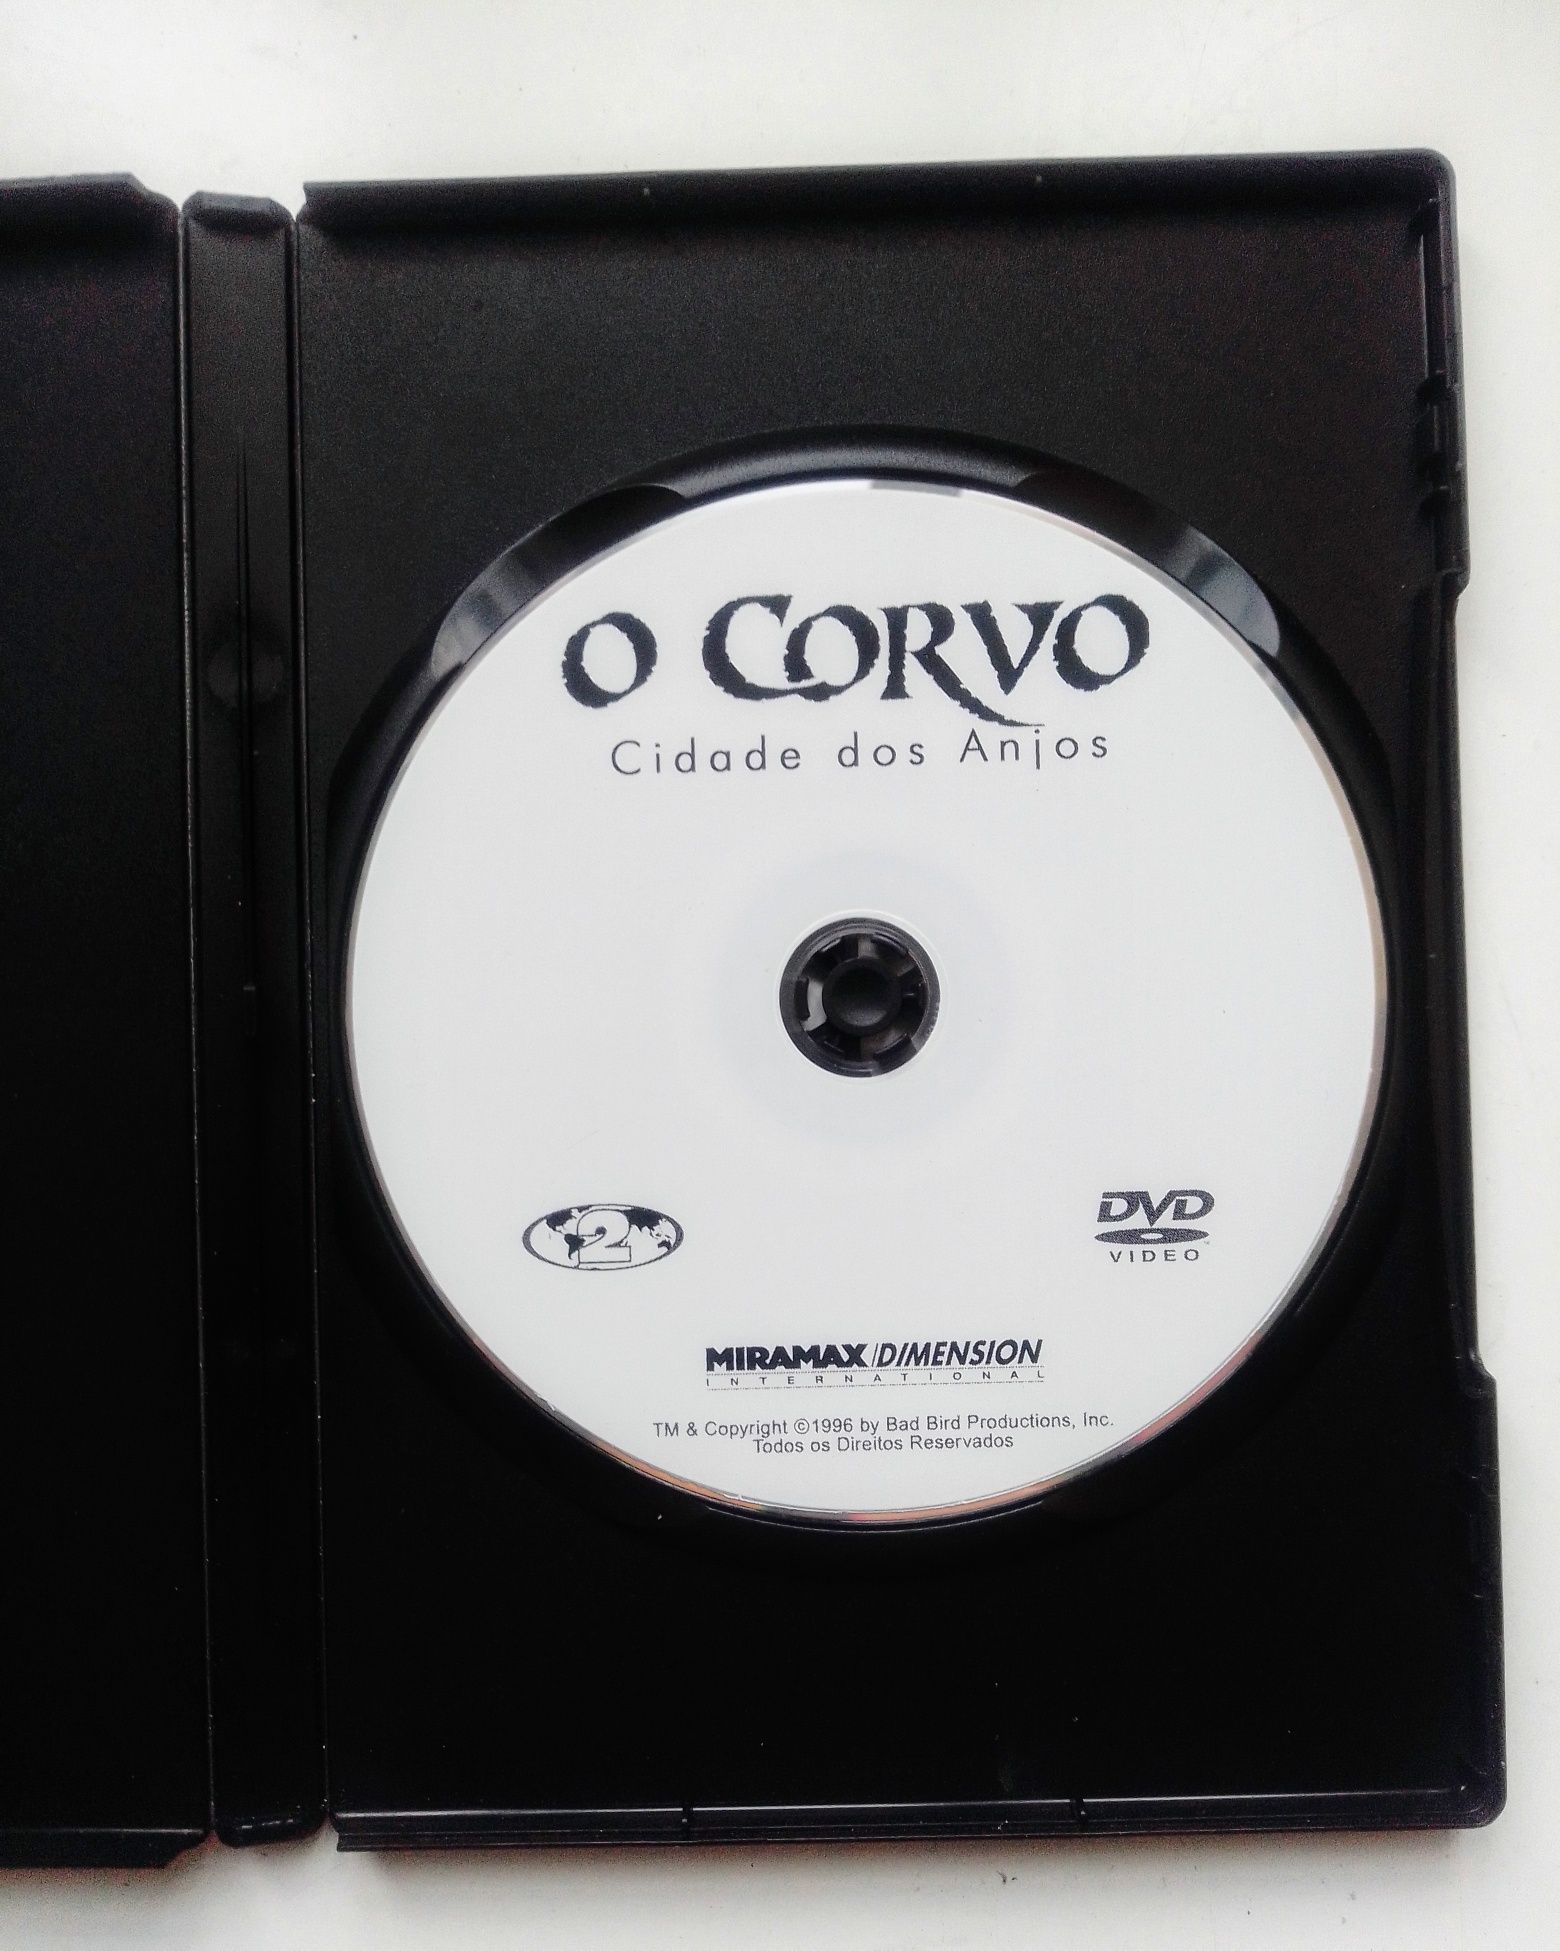 Filme O Corvo Ano 2001 original.